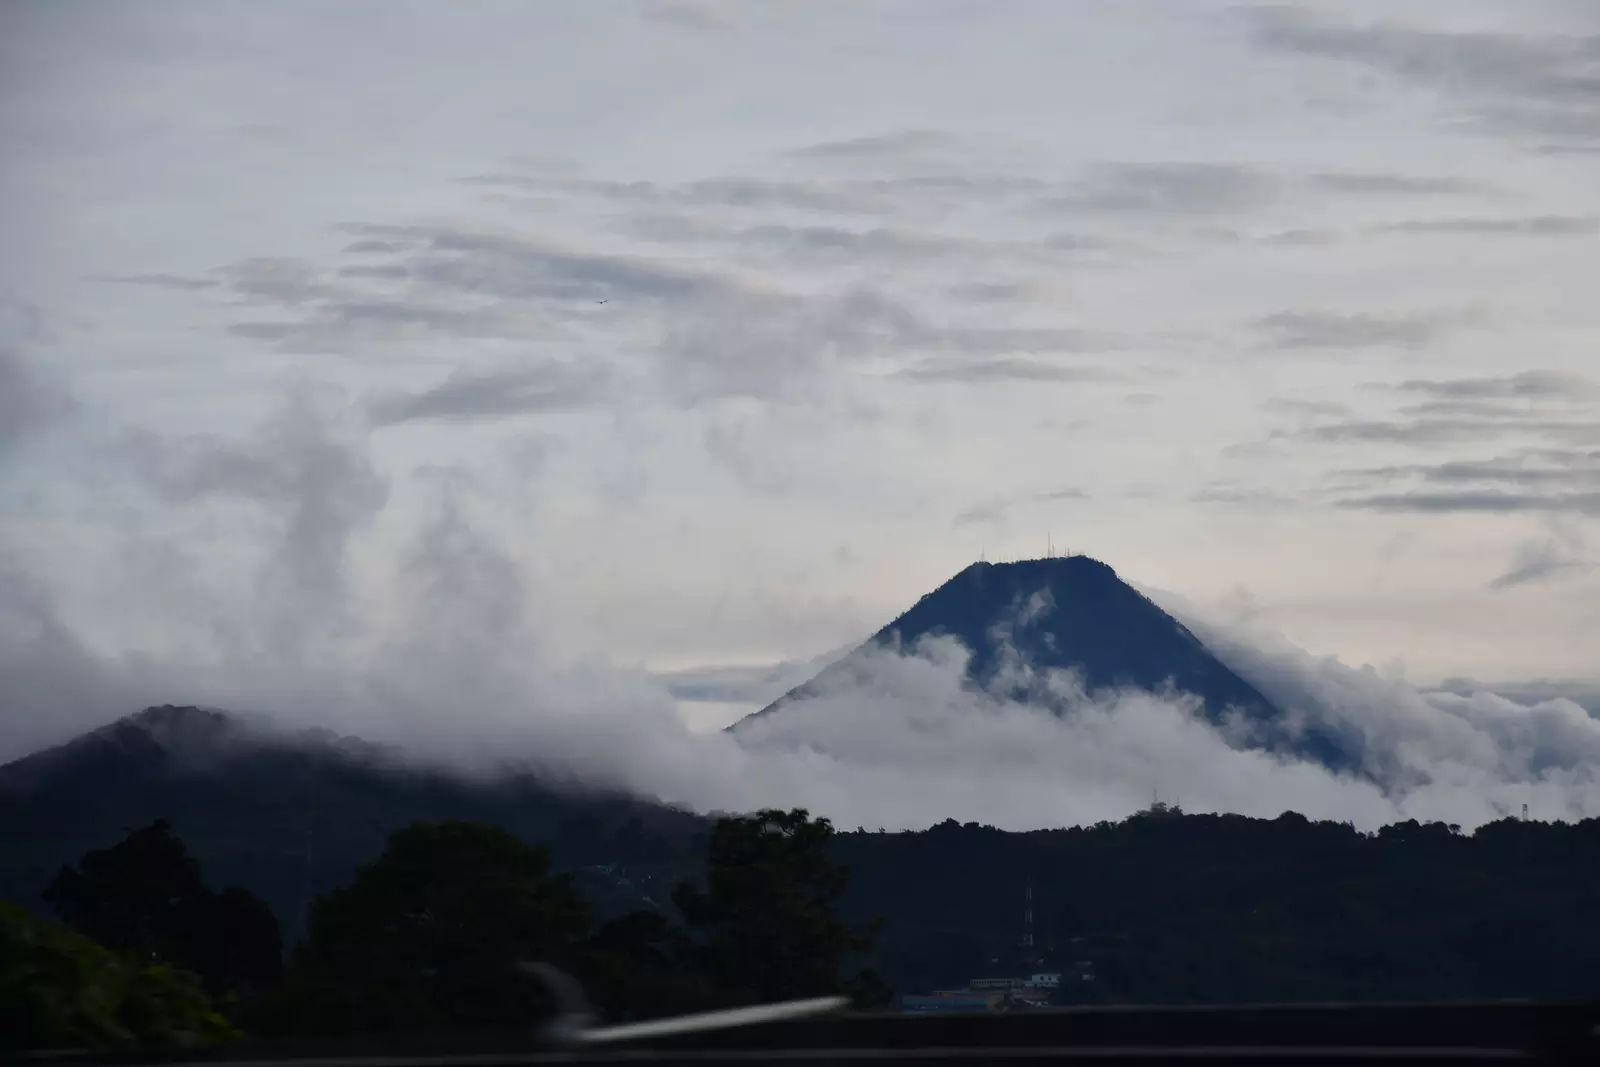 The Volcano de Agua near Antigua, Guatemala